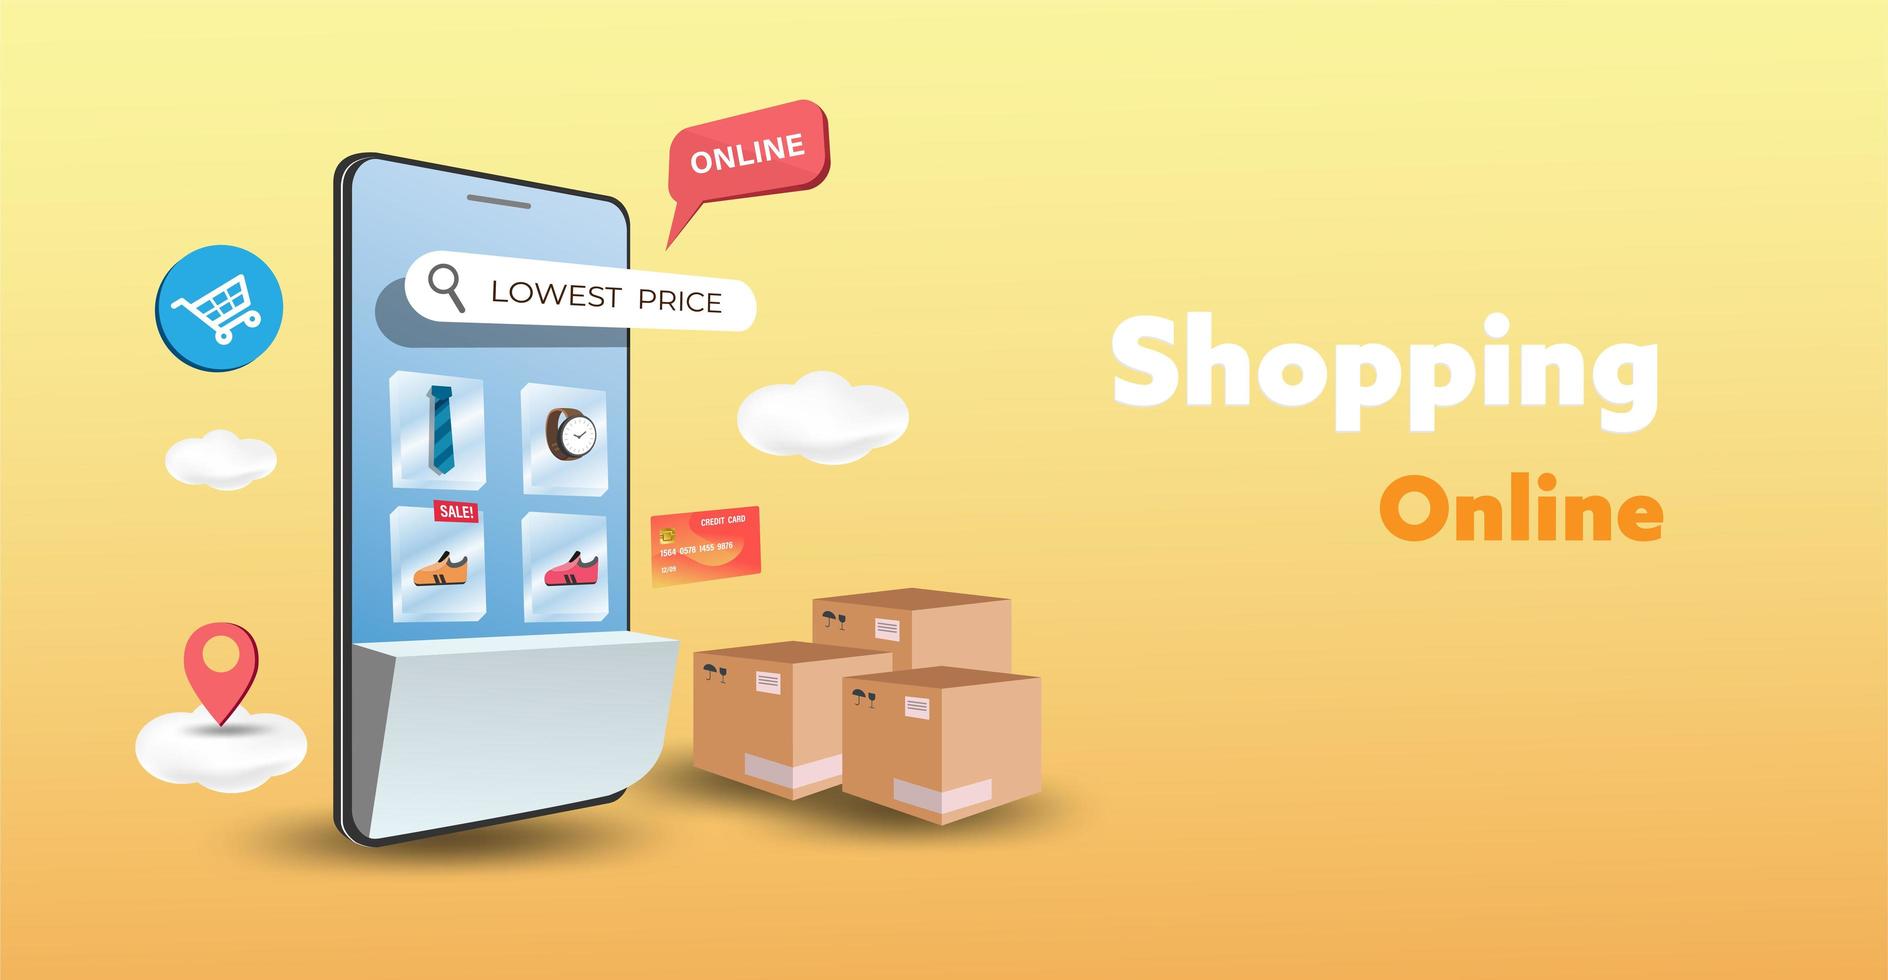 online shopping butik på webbplatsen och mobiltelefon design. smart affärsmarknadsföringskoncept. horisontell vy. vektor illustration.